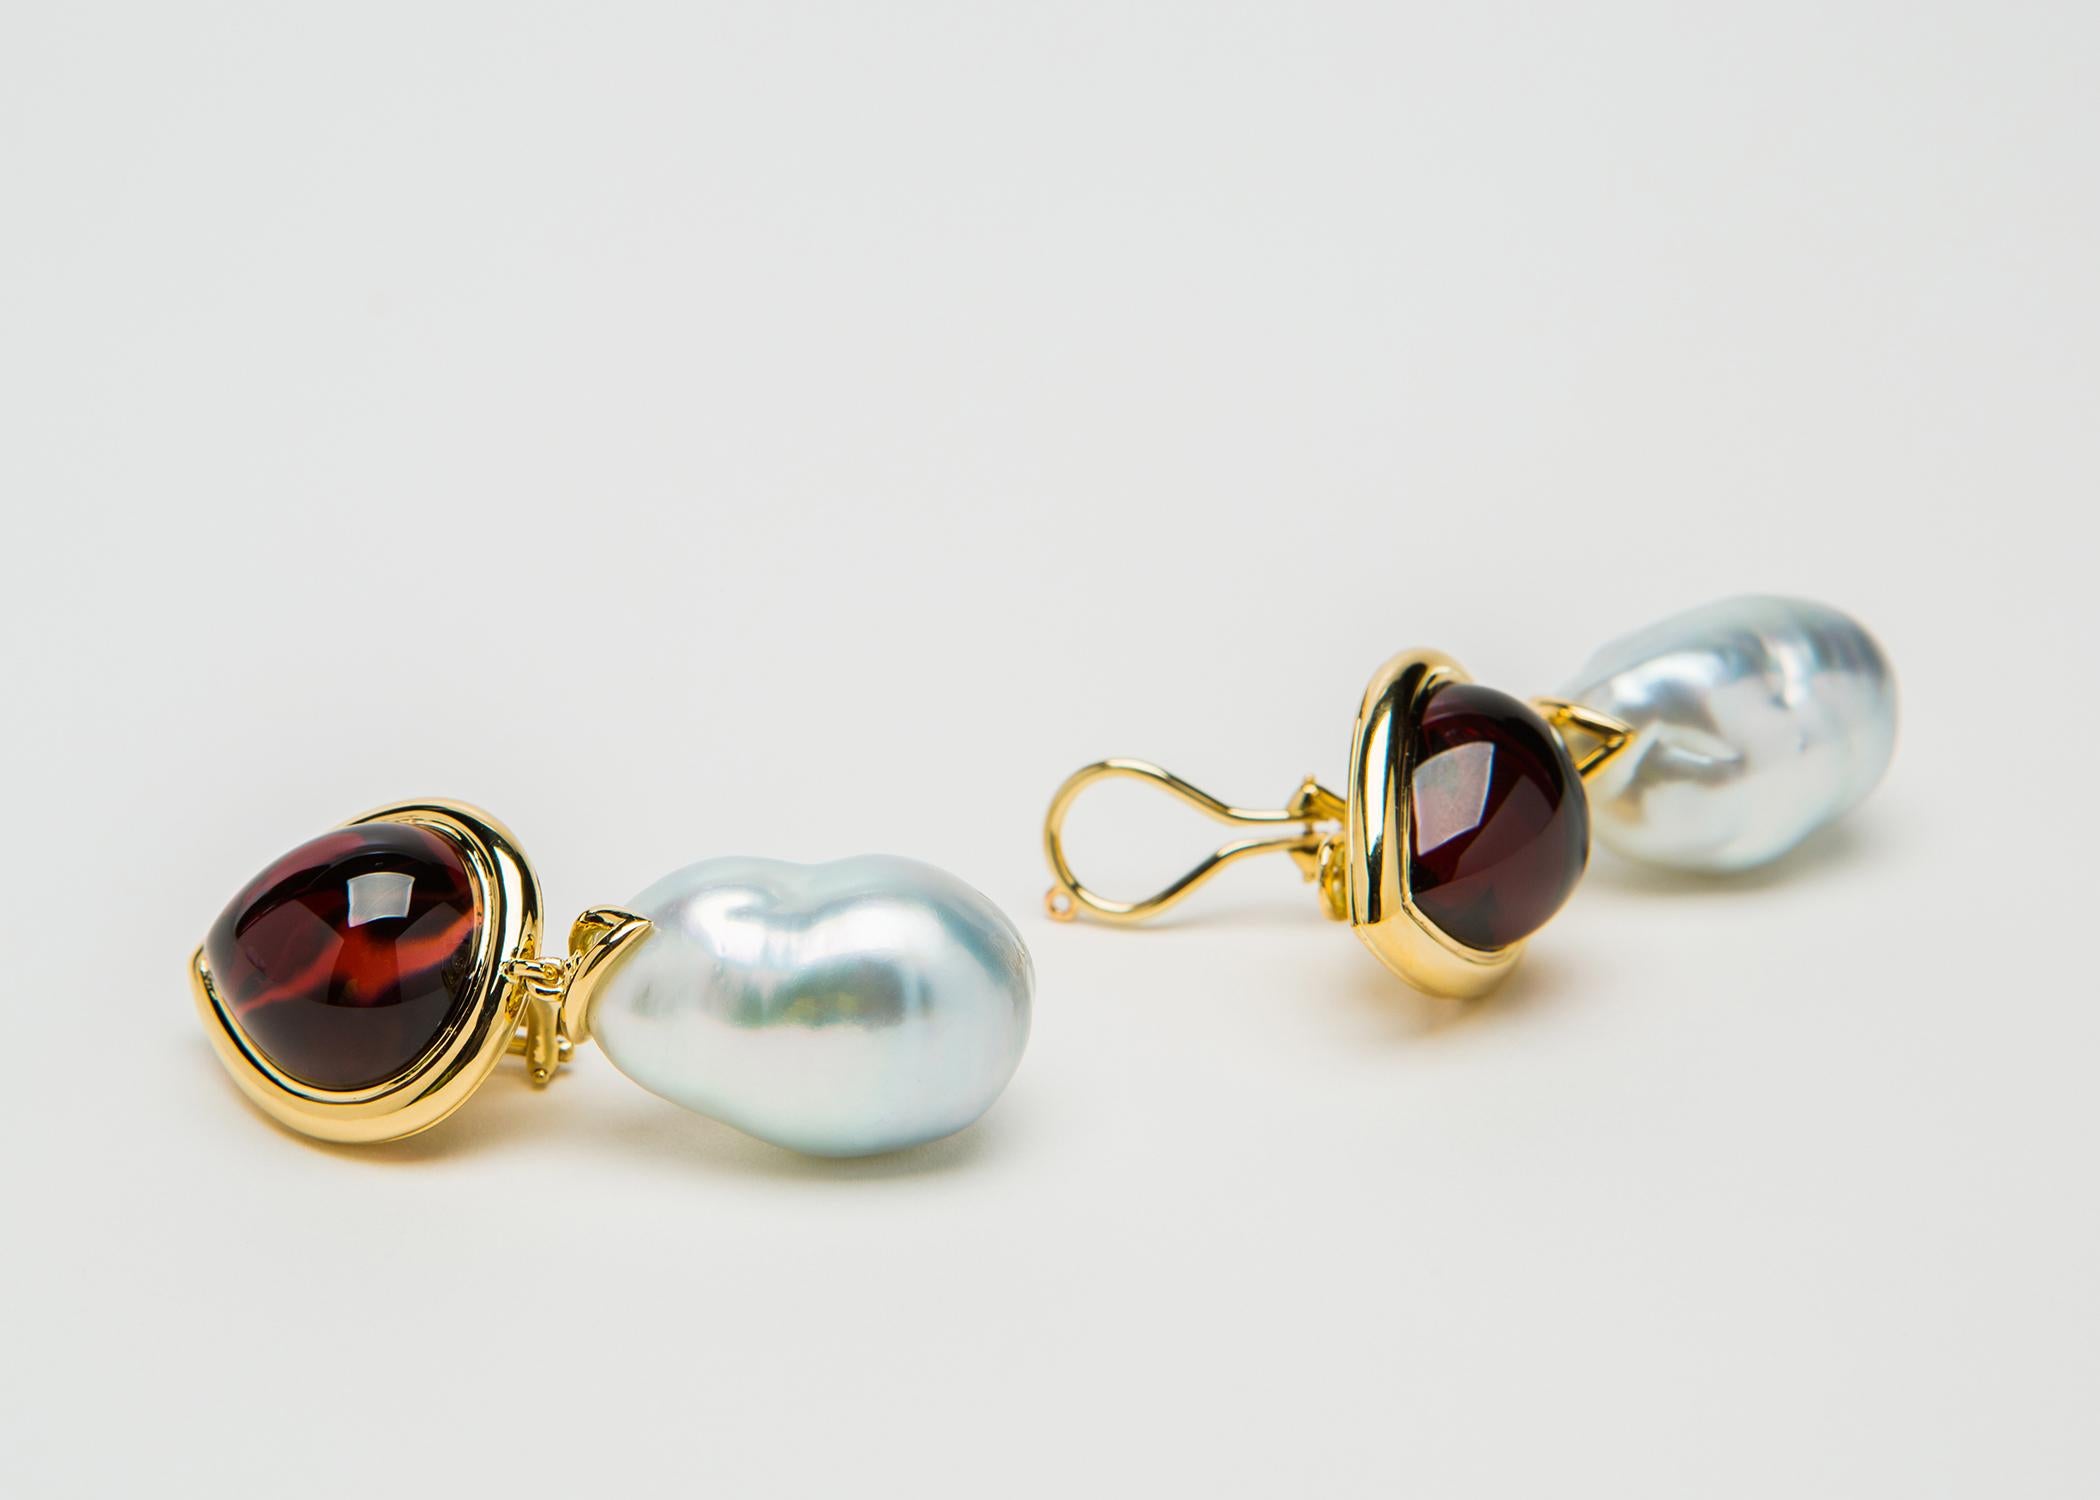 garnet and pearl earrings